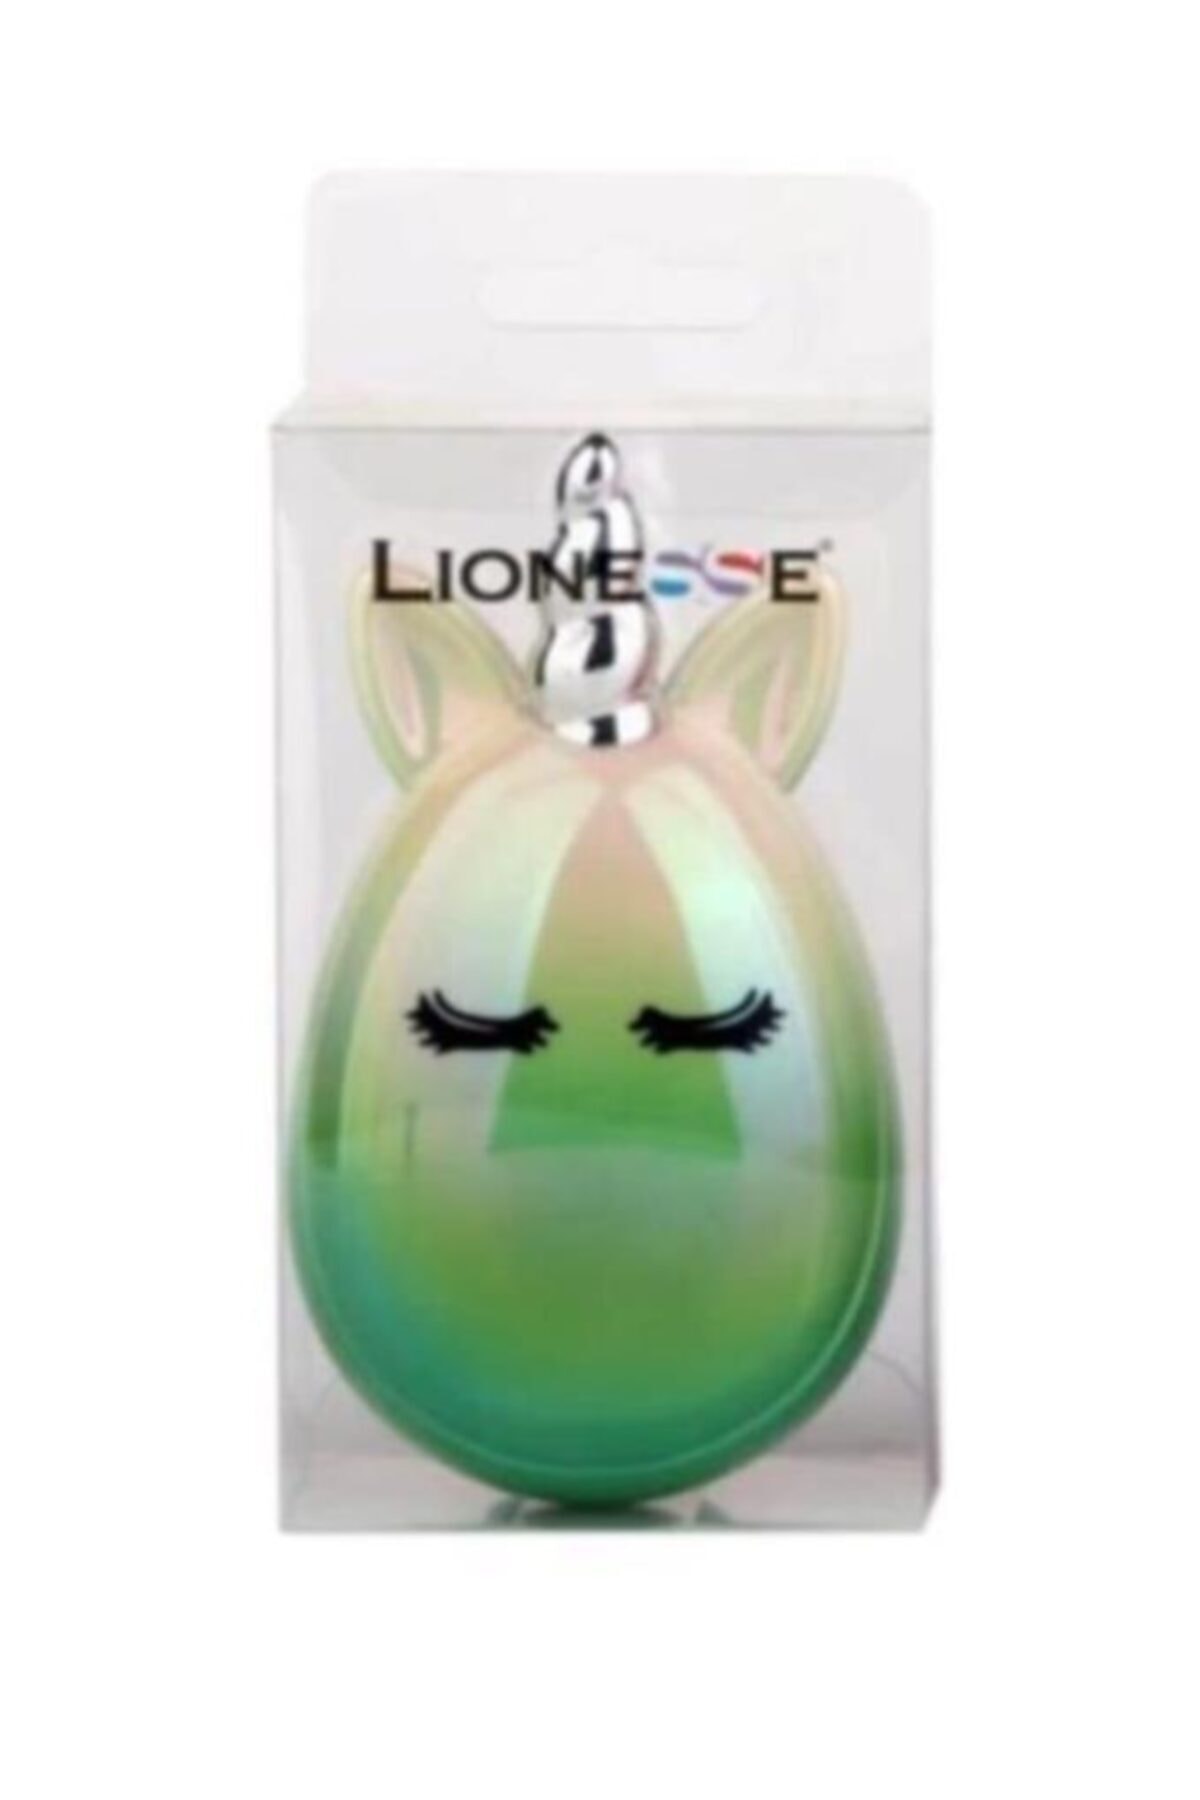 Lionesse Yeşil Renk Unicorn Saç Fırçası 4990